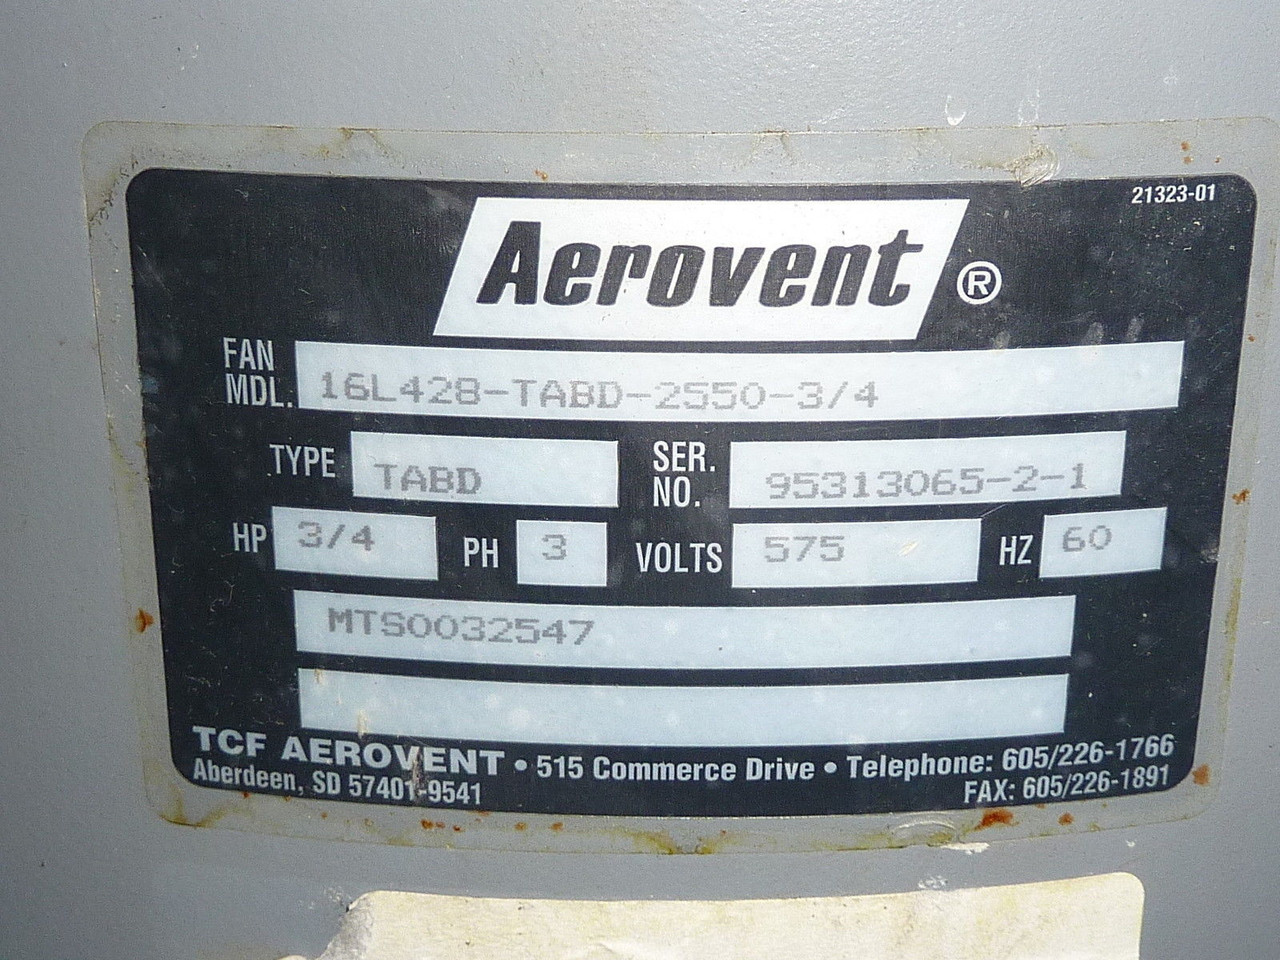 Aerovent 16L42B-TABD-2550-3/4 Fan 575V 3PH 0.75HP USED